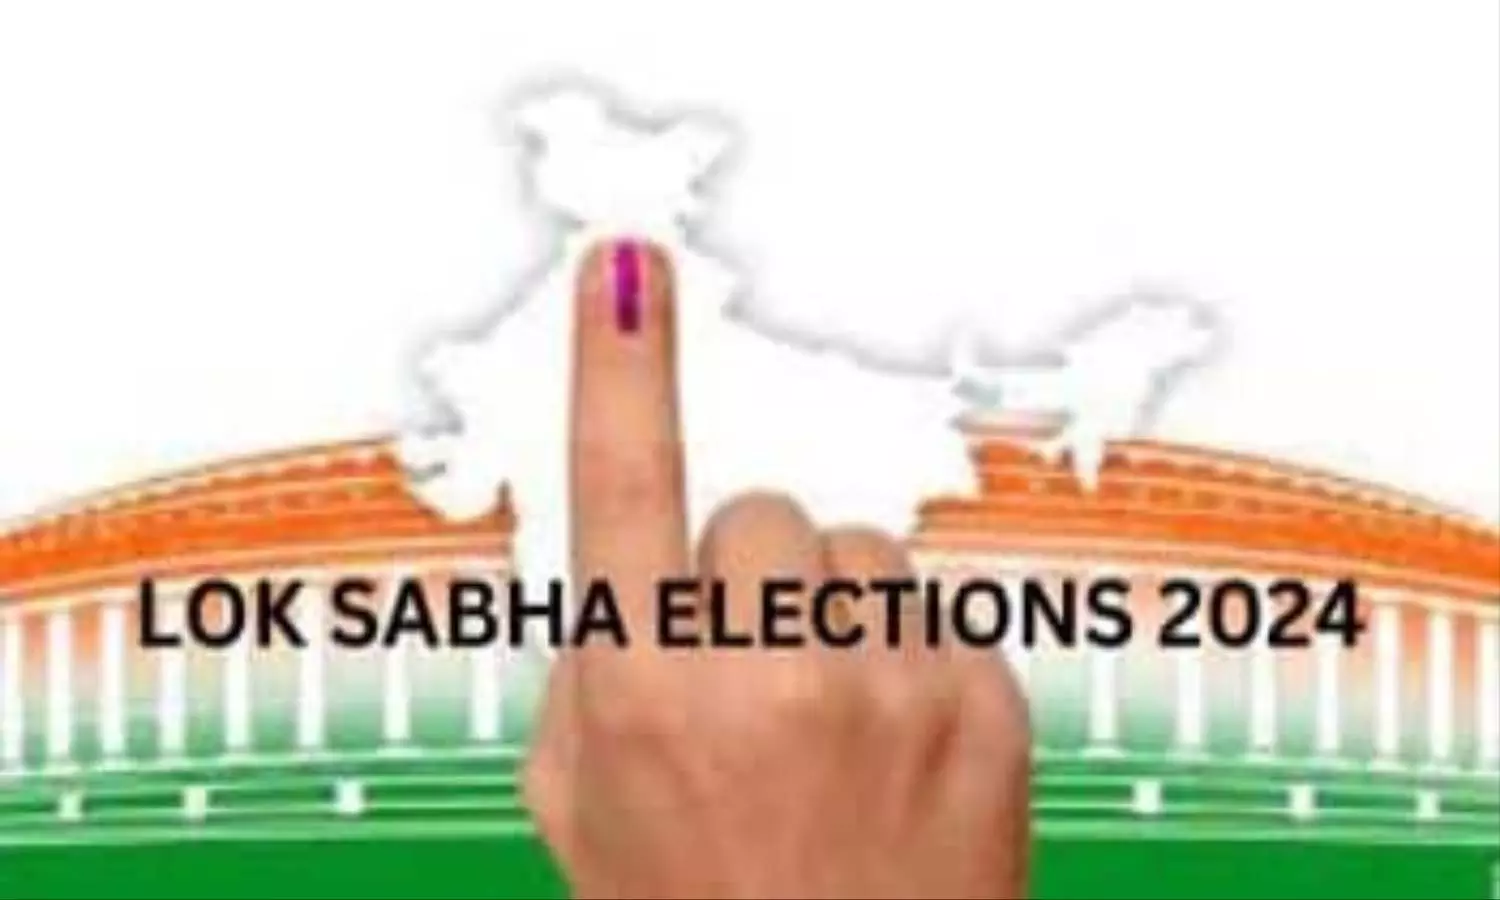 Loksabha Election 2024: चुनाव को लेकर आम जनता के लिए Google ने लिया बड़ा फैसला, उठाया सख्त कदम